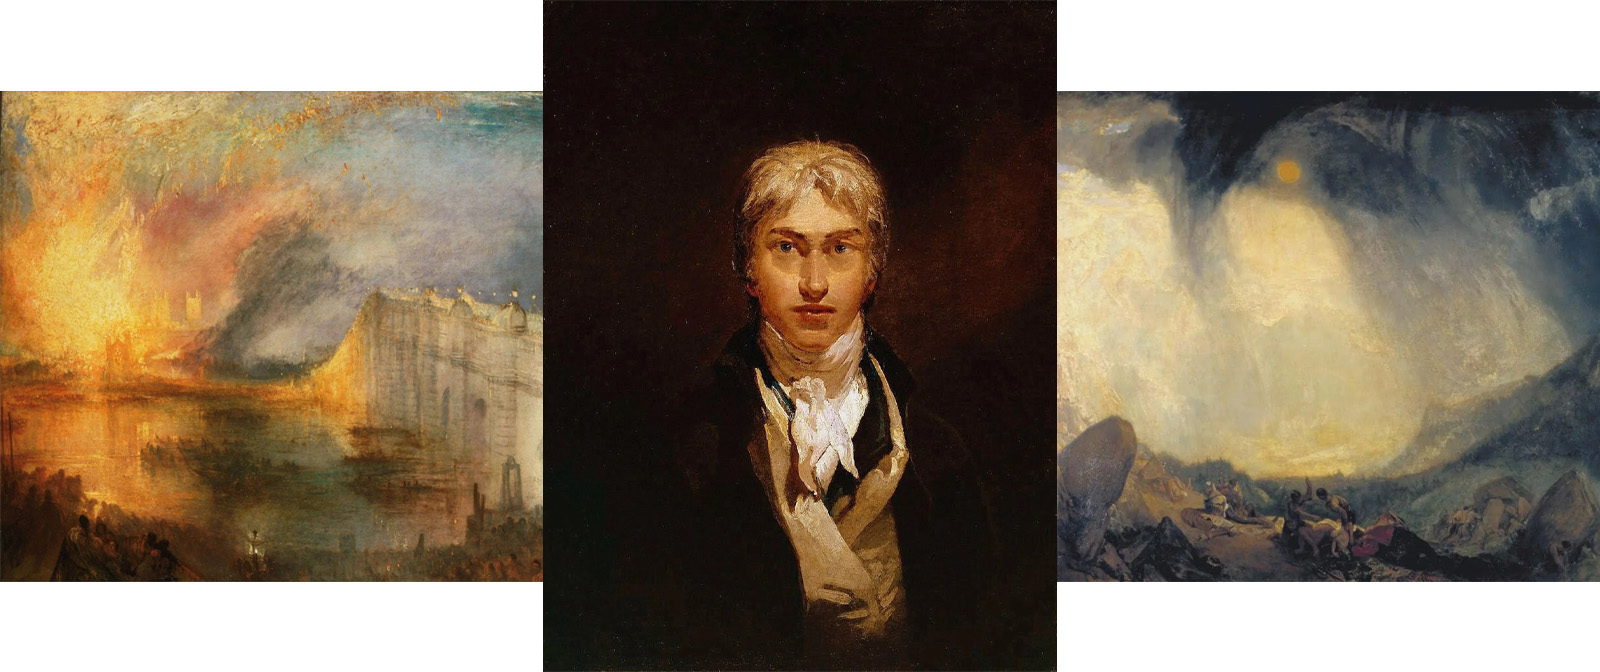 Как художник — гений, но как человек … Каким был «мастер отображения стихий» Уильям Тёрнер в обычной жизни?